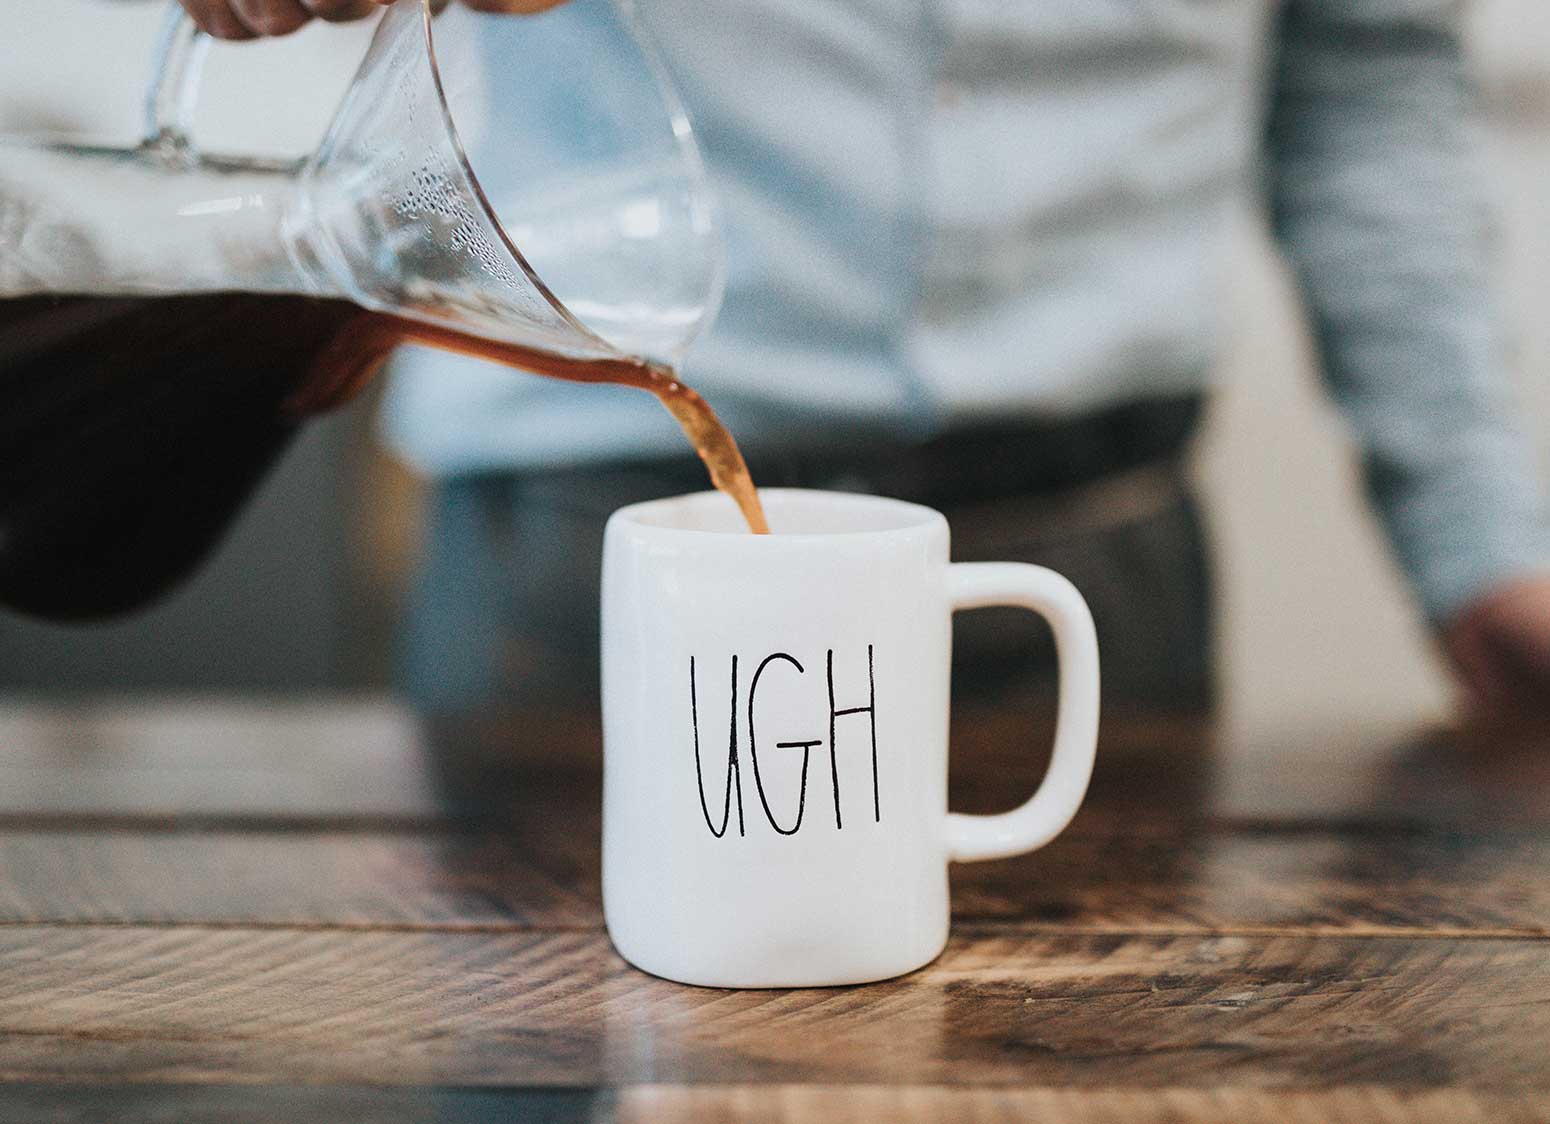 Pouring Coffee Into Mug Labeled "Ugh"